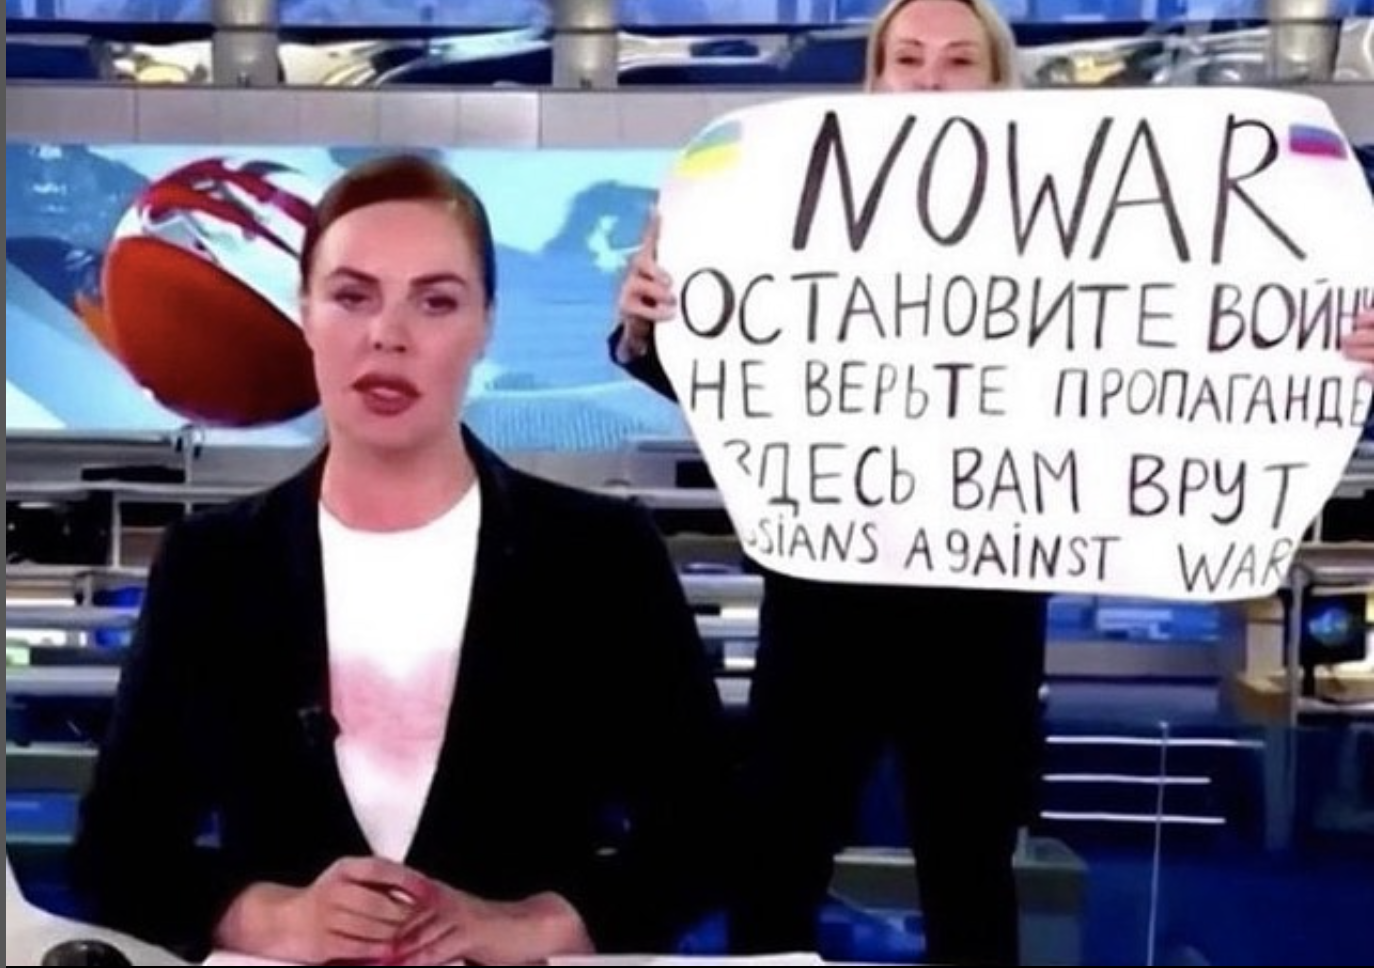 A Che Tempo Che Fa ospite Marina Ovsyannikova, la giornalista russa che ha mostrato il cartello contro Putin